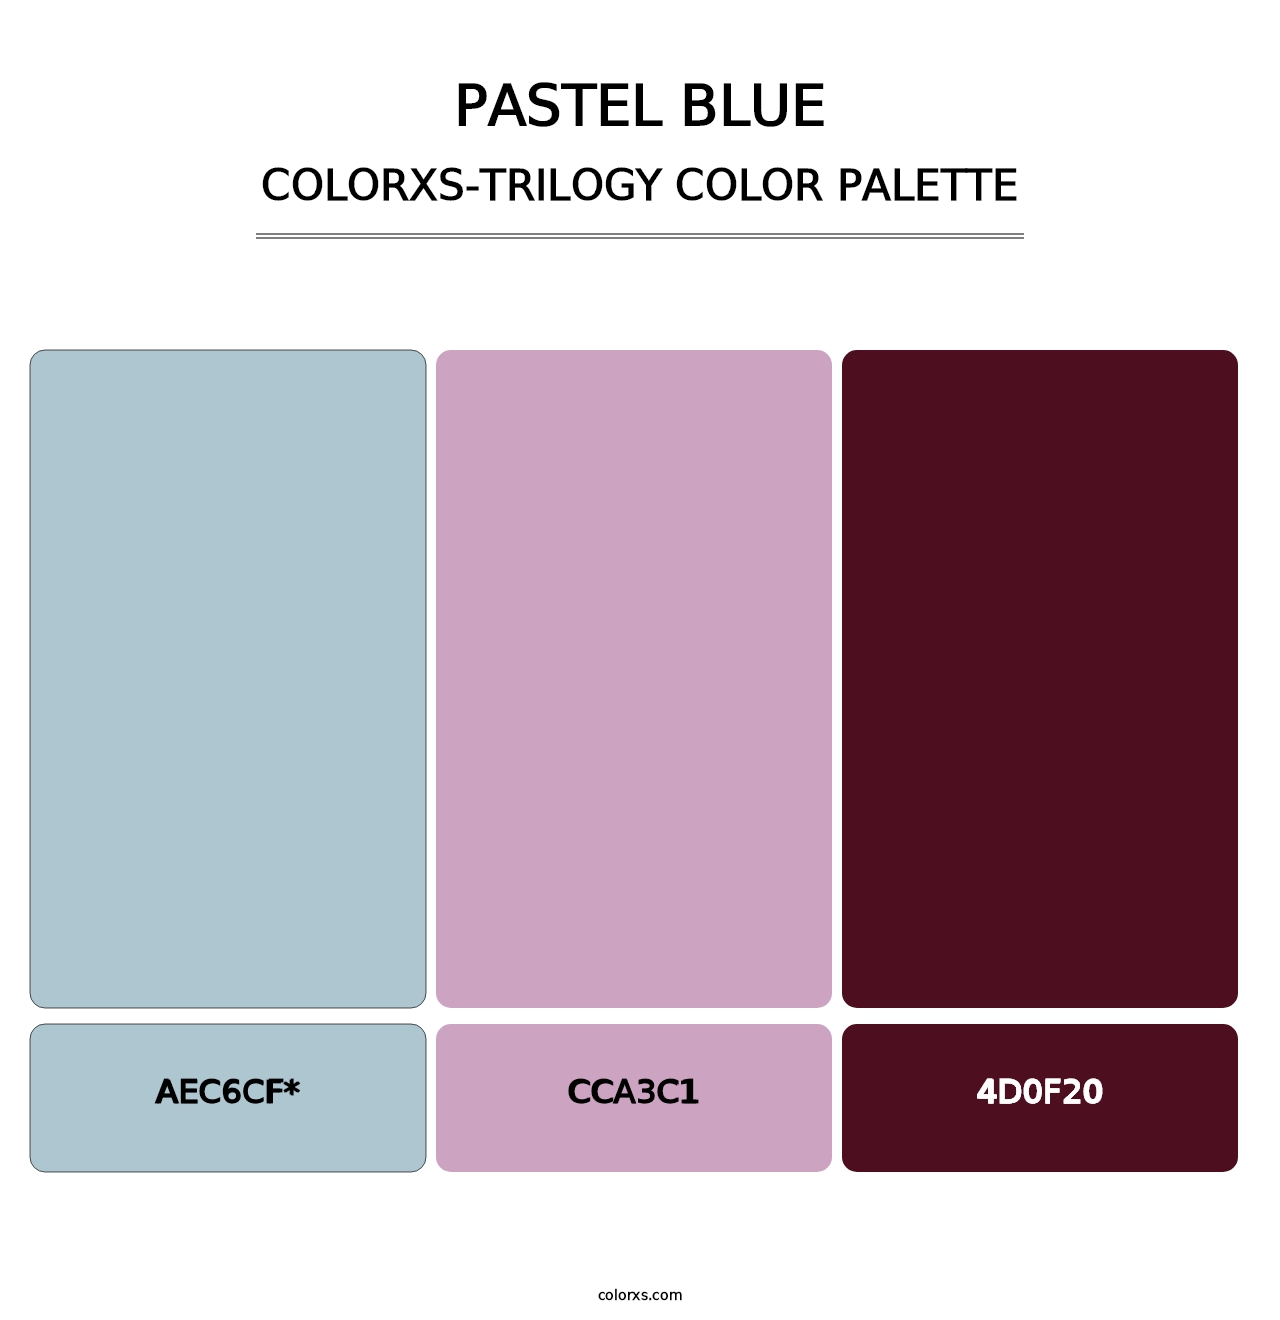 Pastel Blue - Colorxs Trilogy Palette